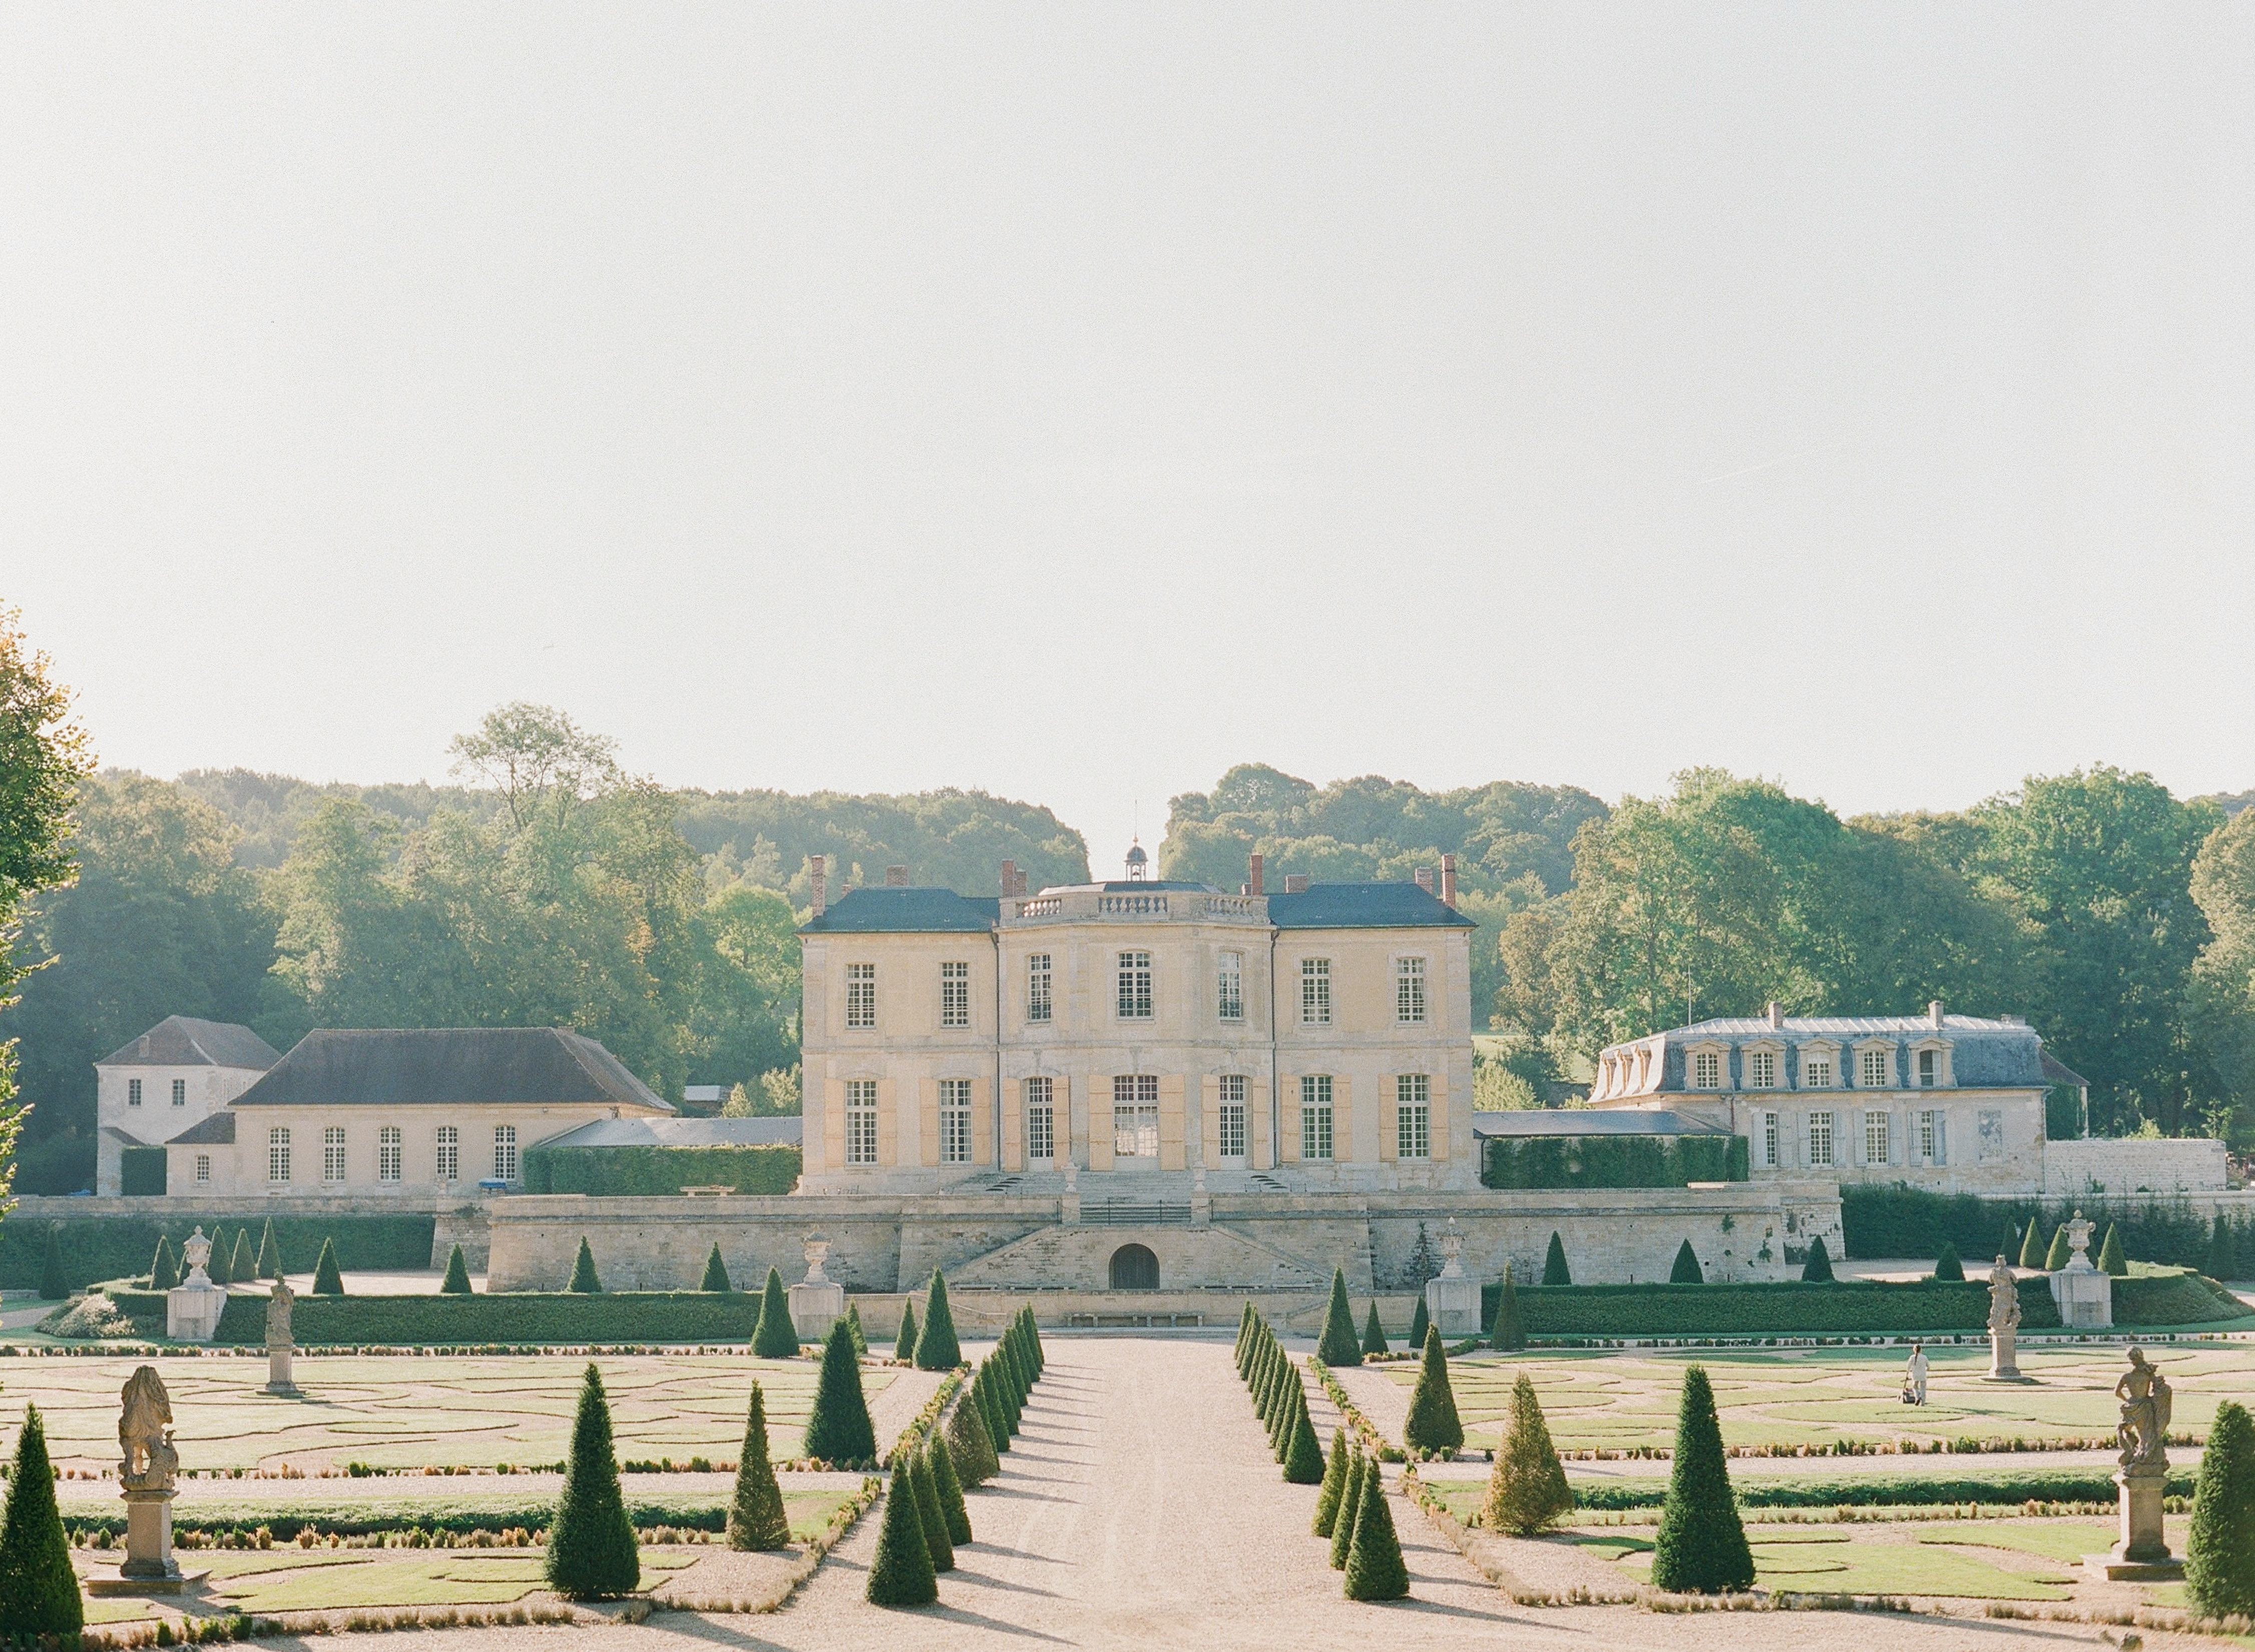 Château de Villette wedding venue near Paris